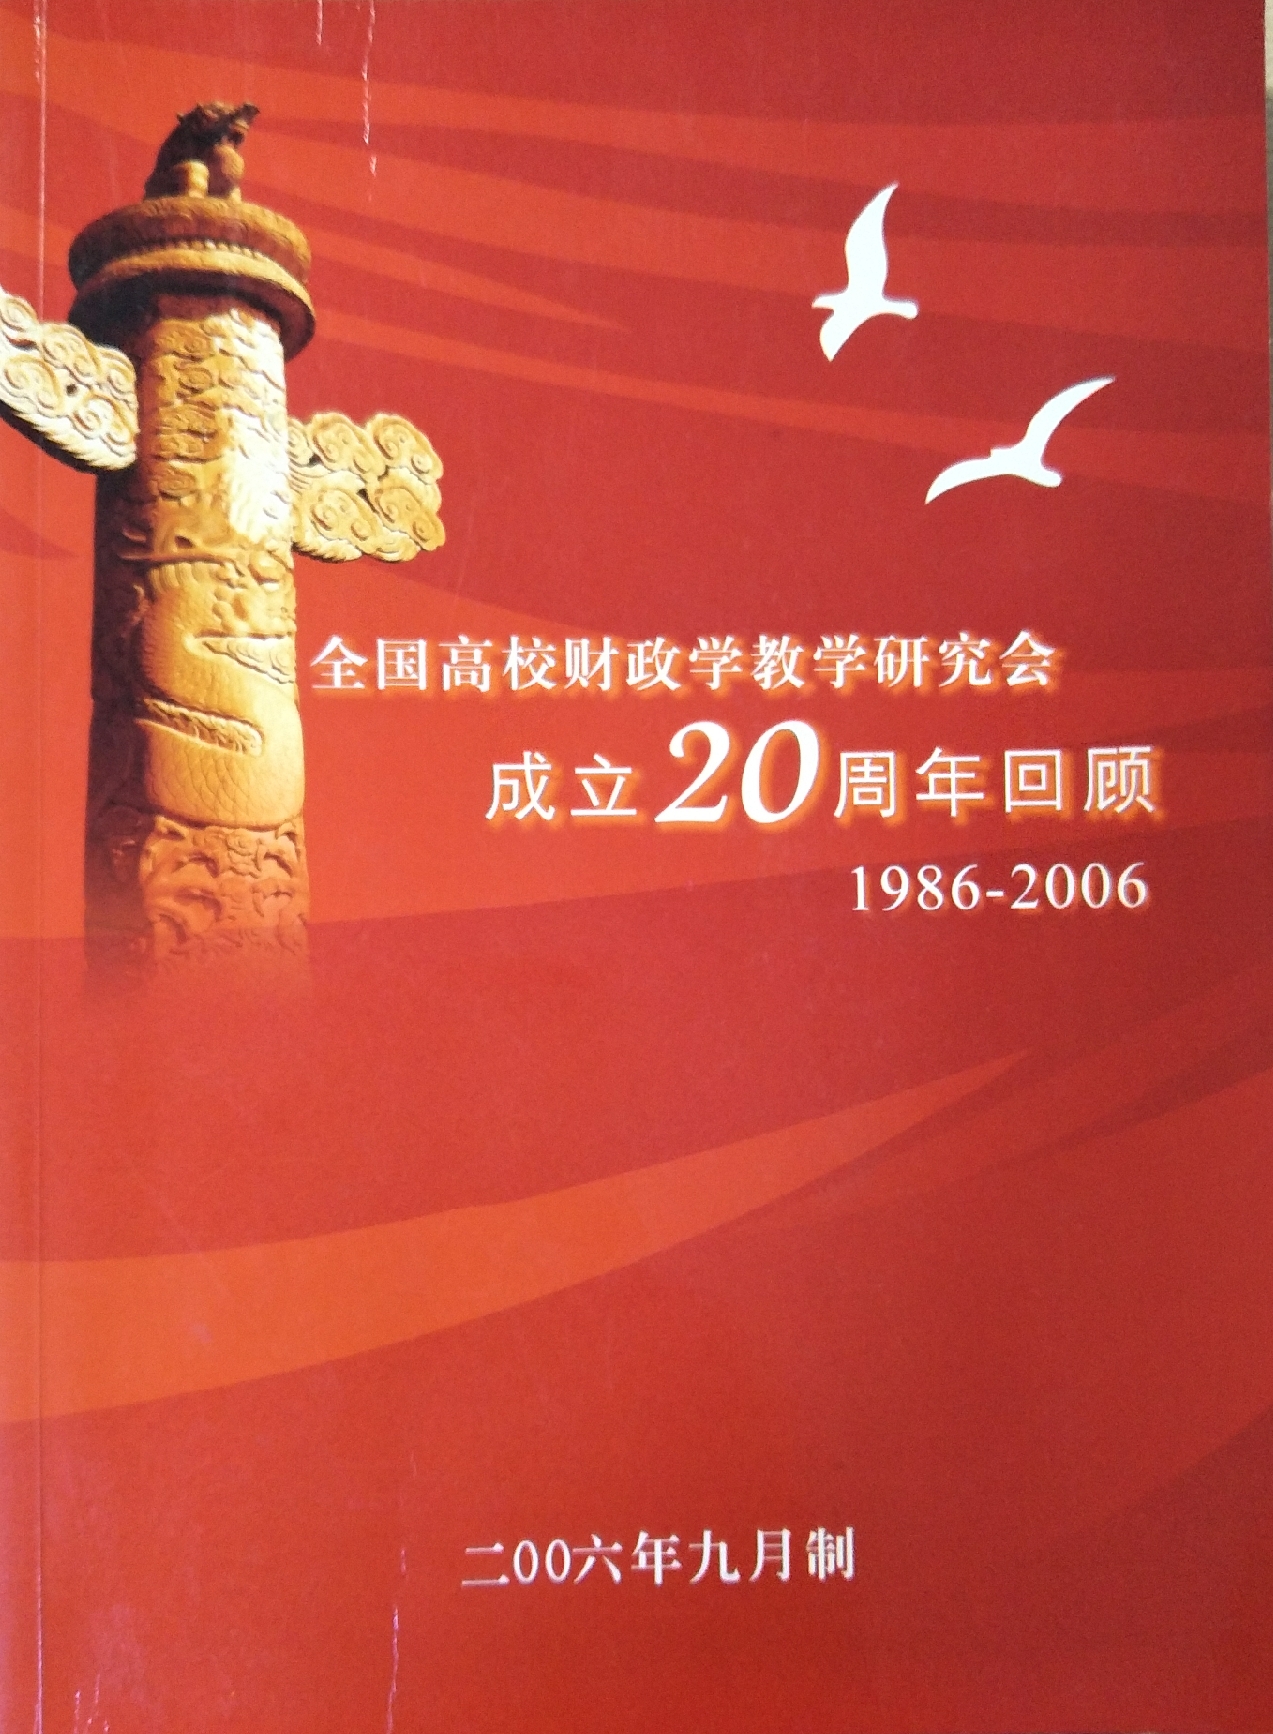 2006年第17次年會（杭州）20周年